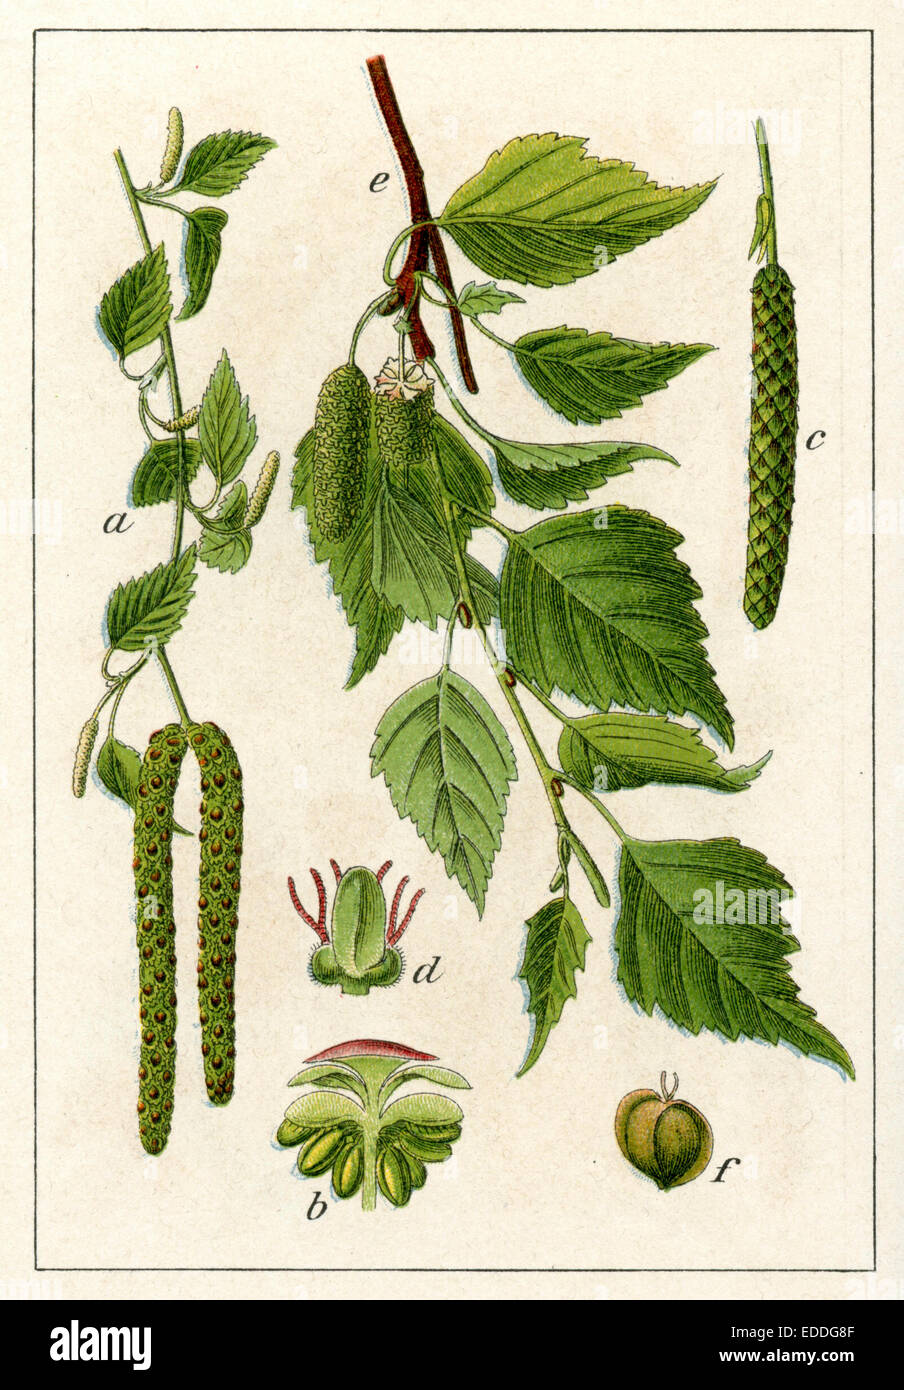 Betula pendula (syn. Betula verrucosa, Betula alba) Stock Photo